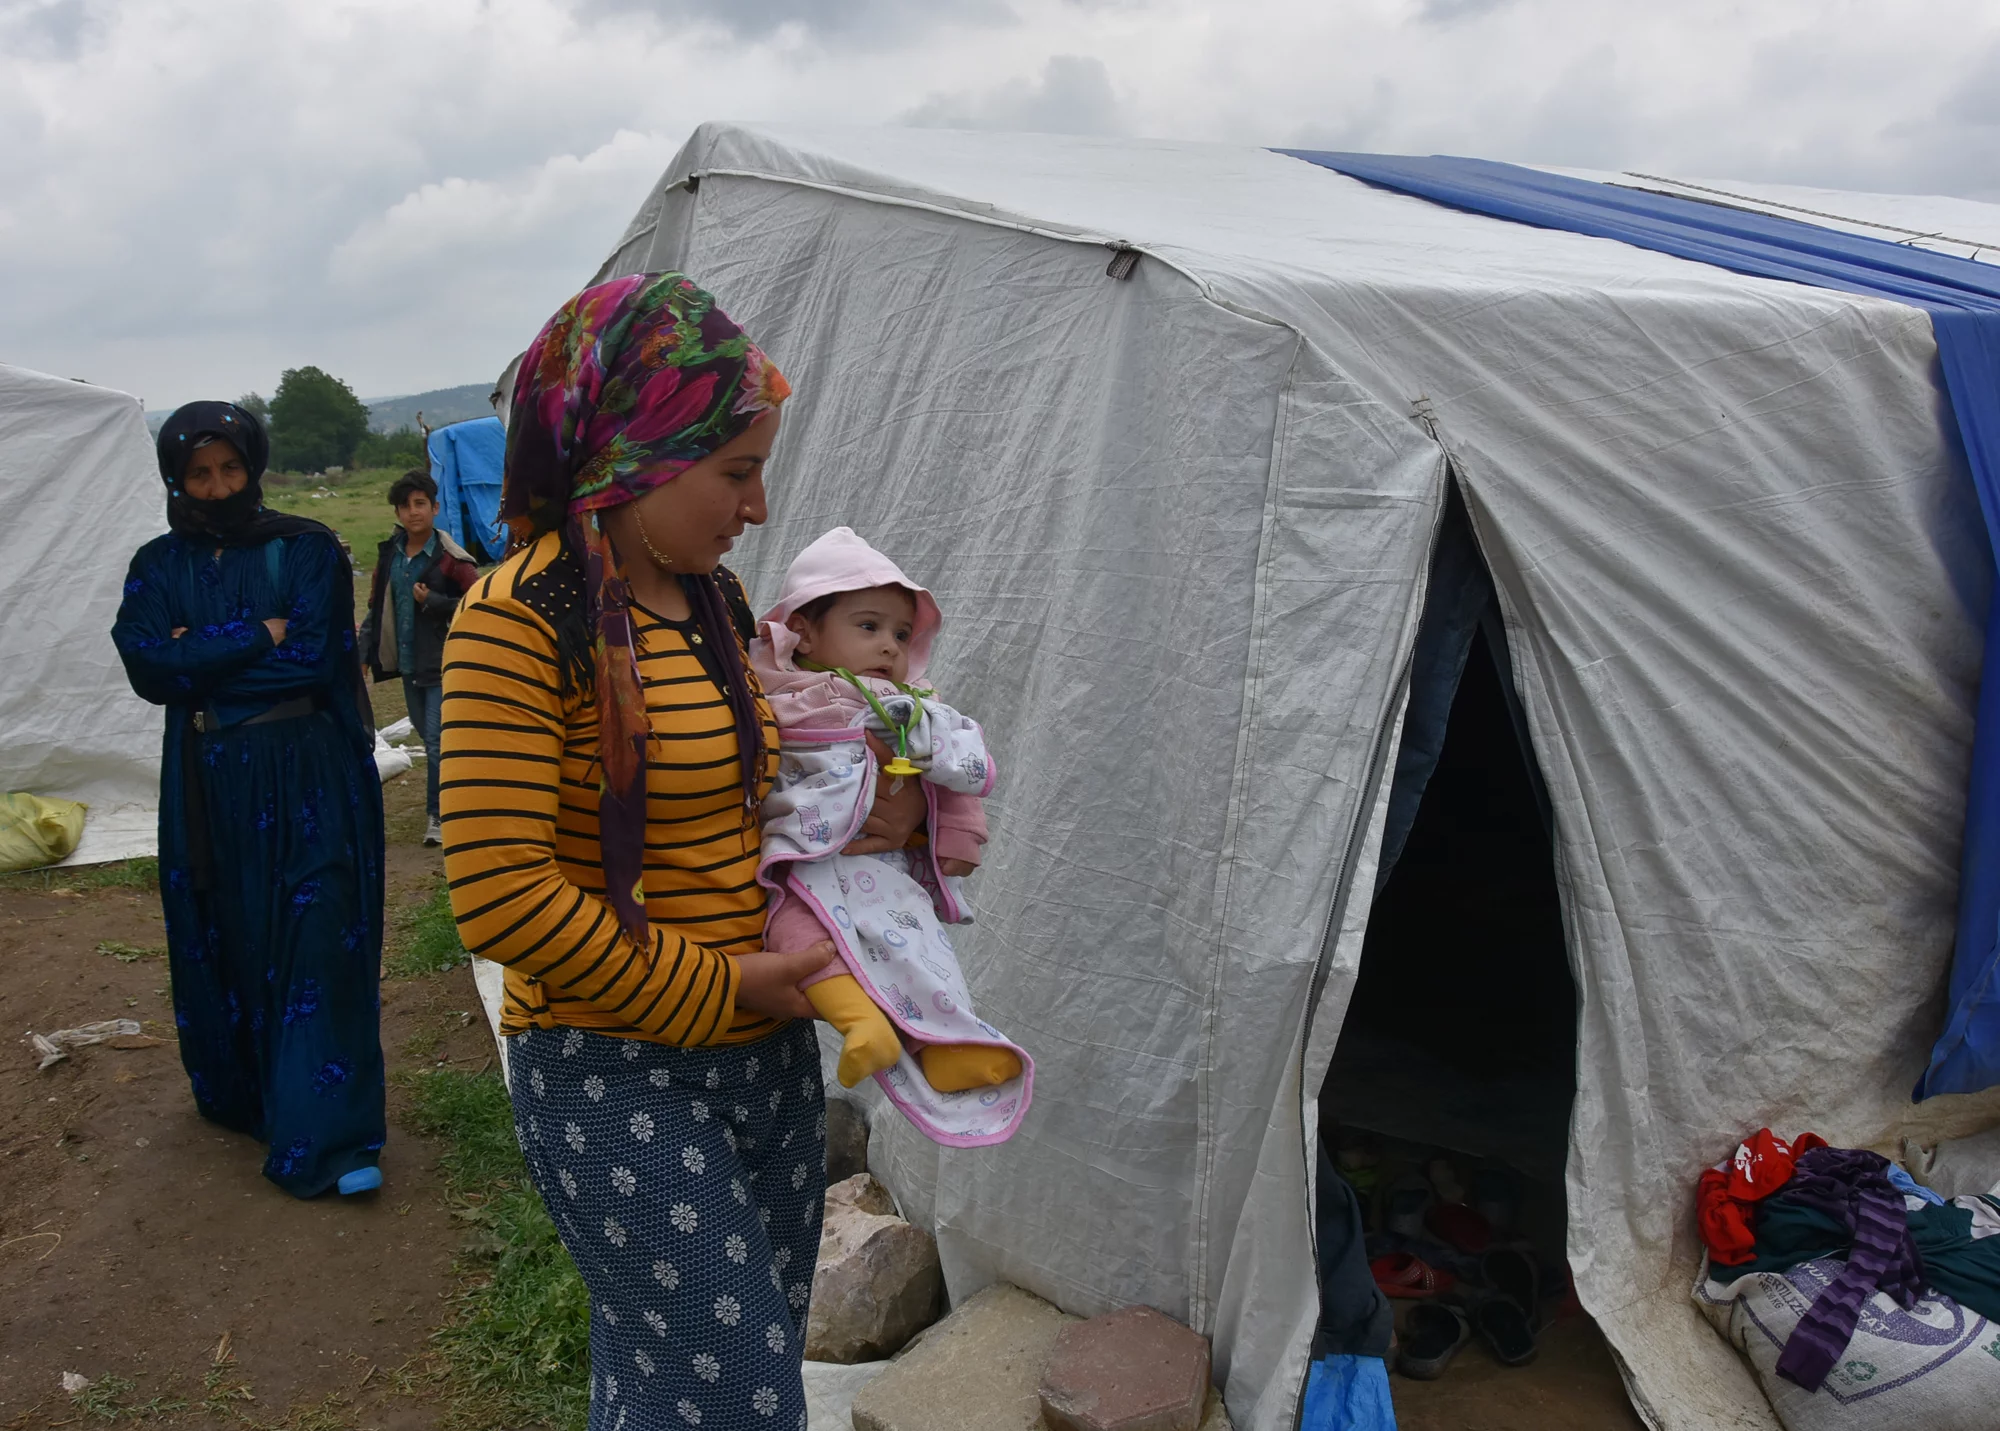 Tarım işçisi ailelerin çadırda çocuklarıyla yaşam mücadelesi